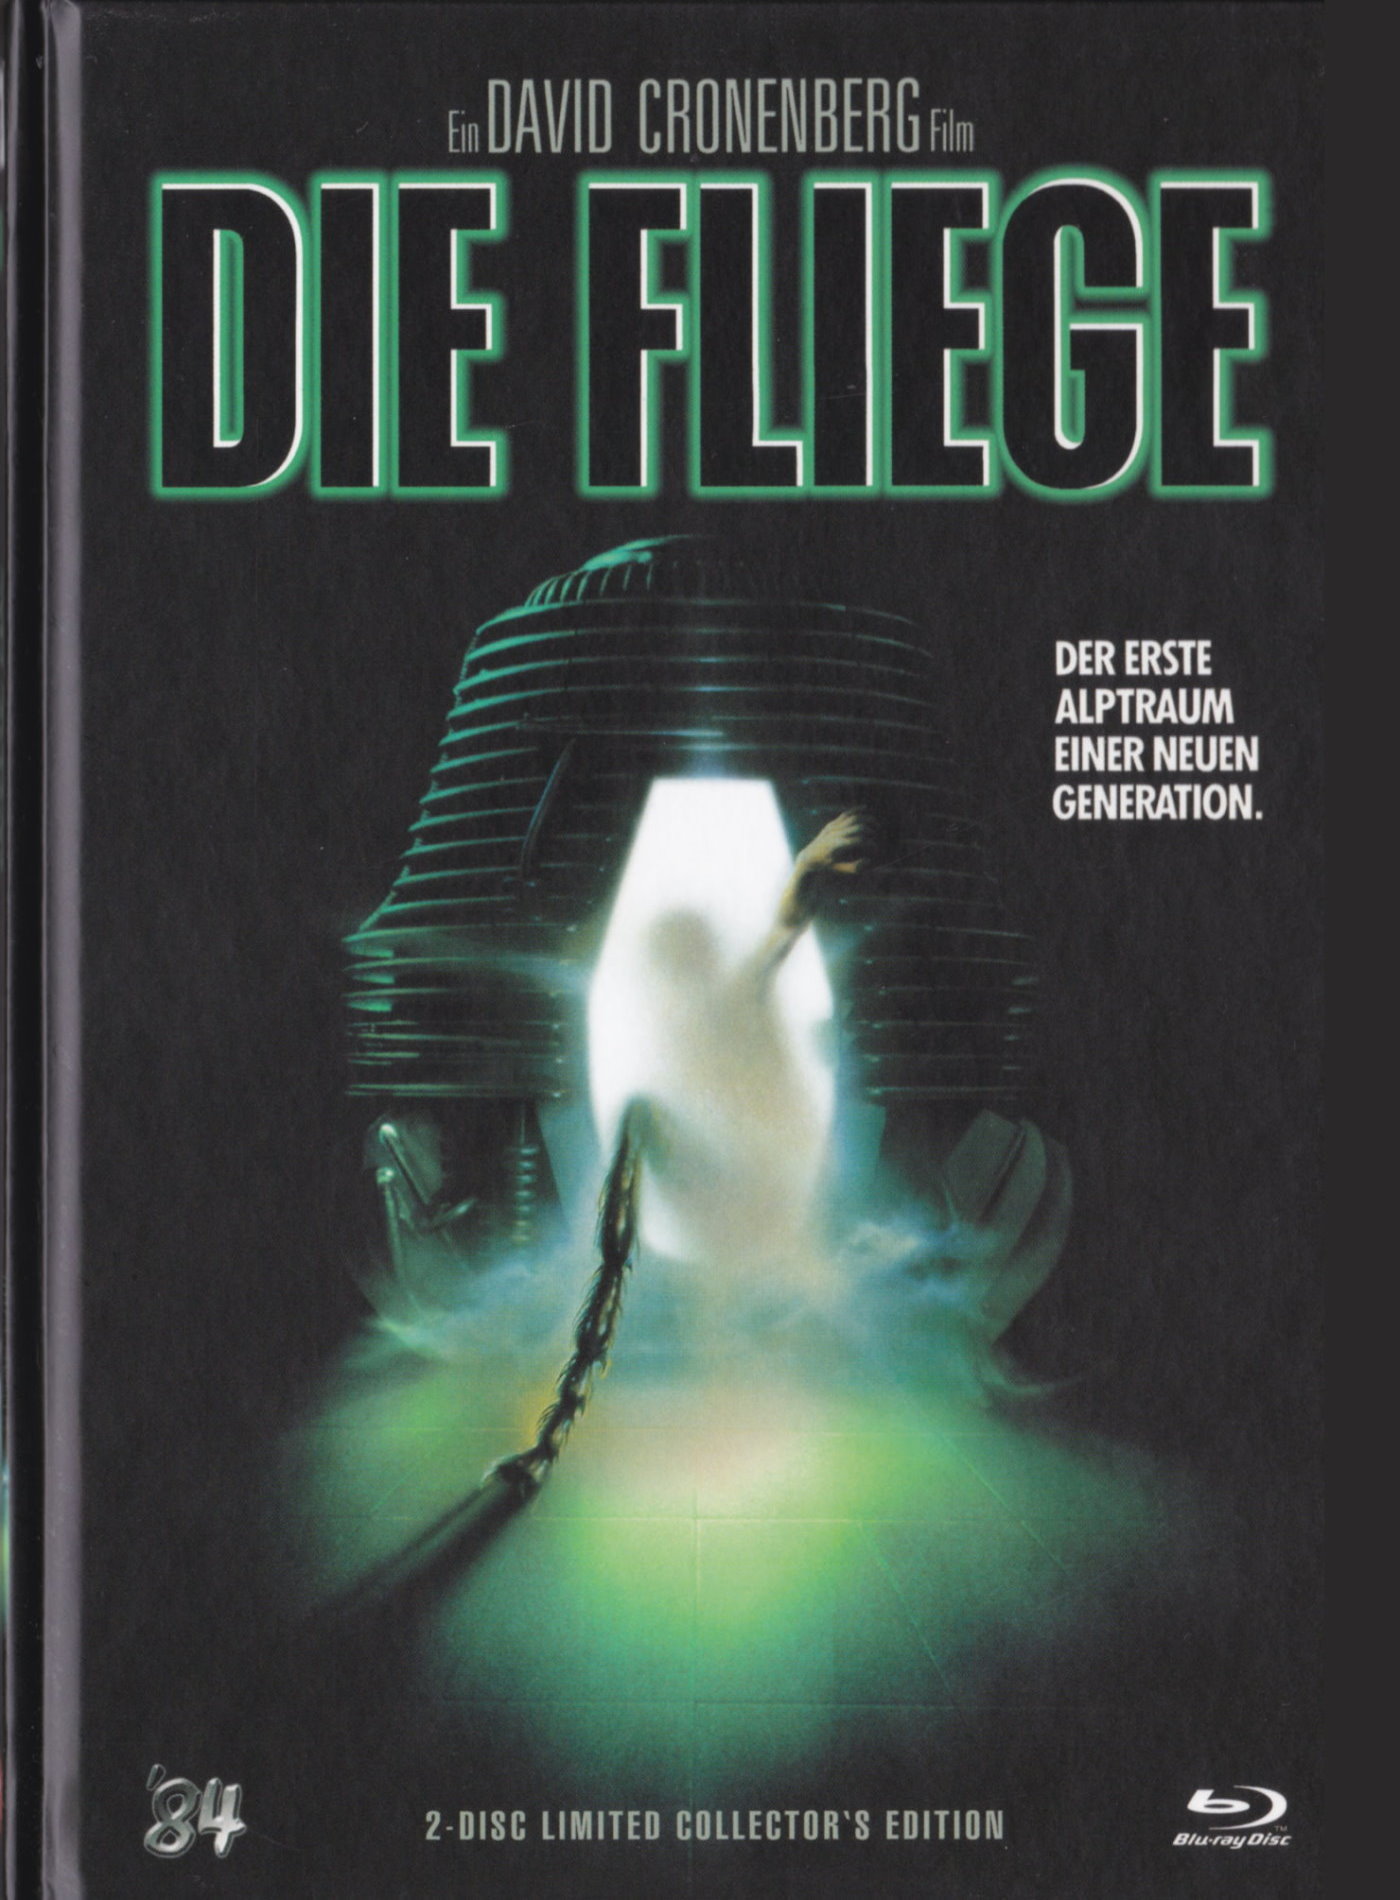 Cover - Die Fliege.jpg